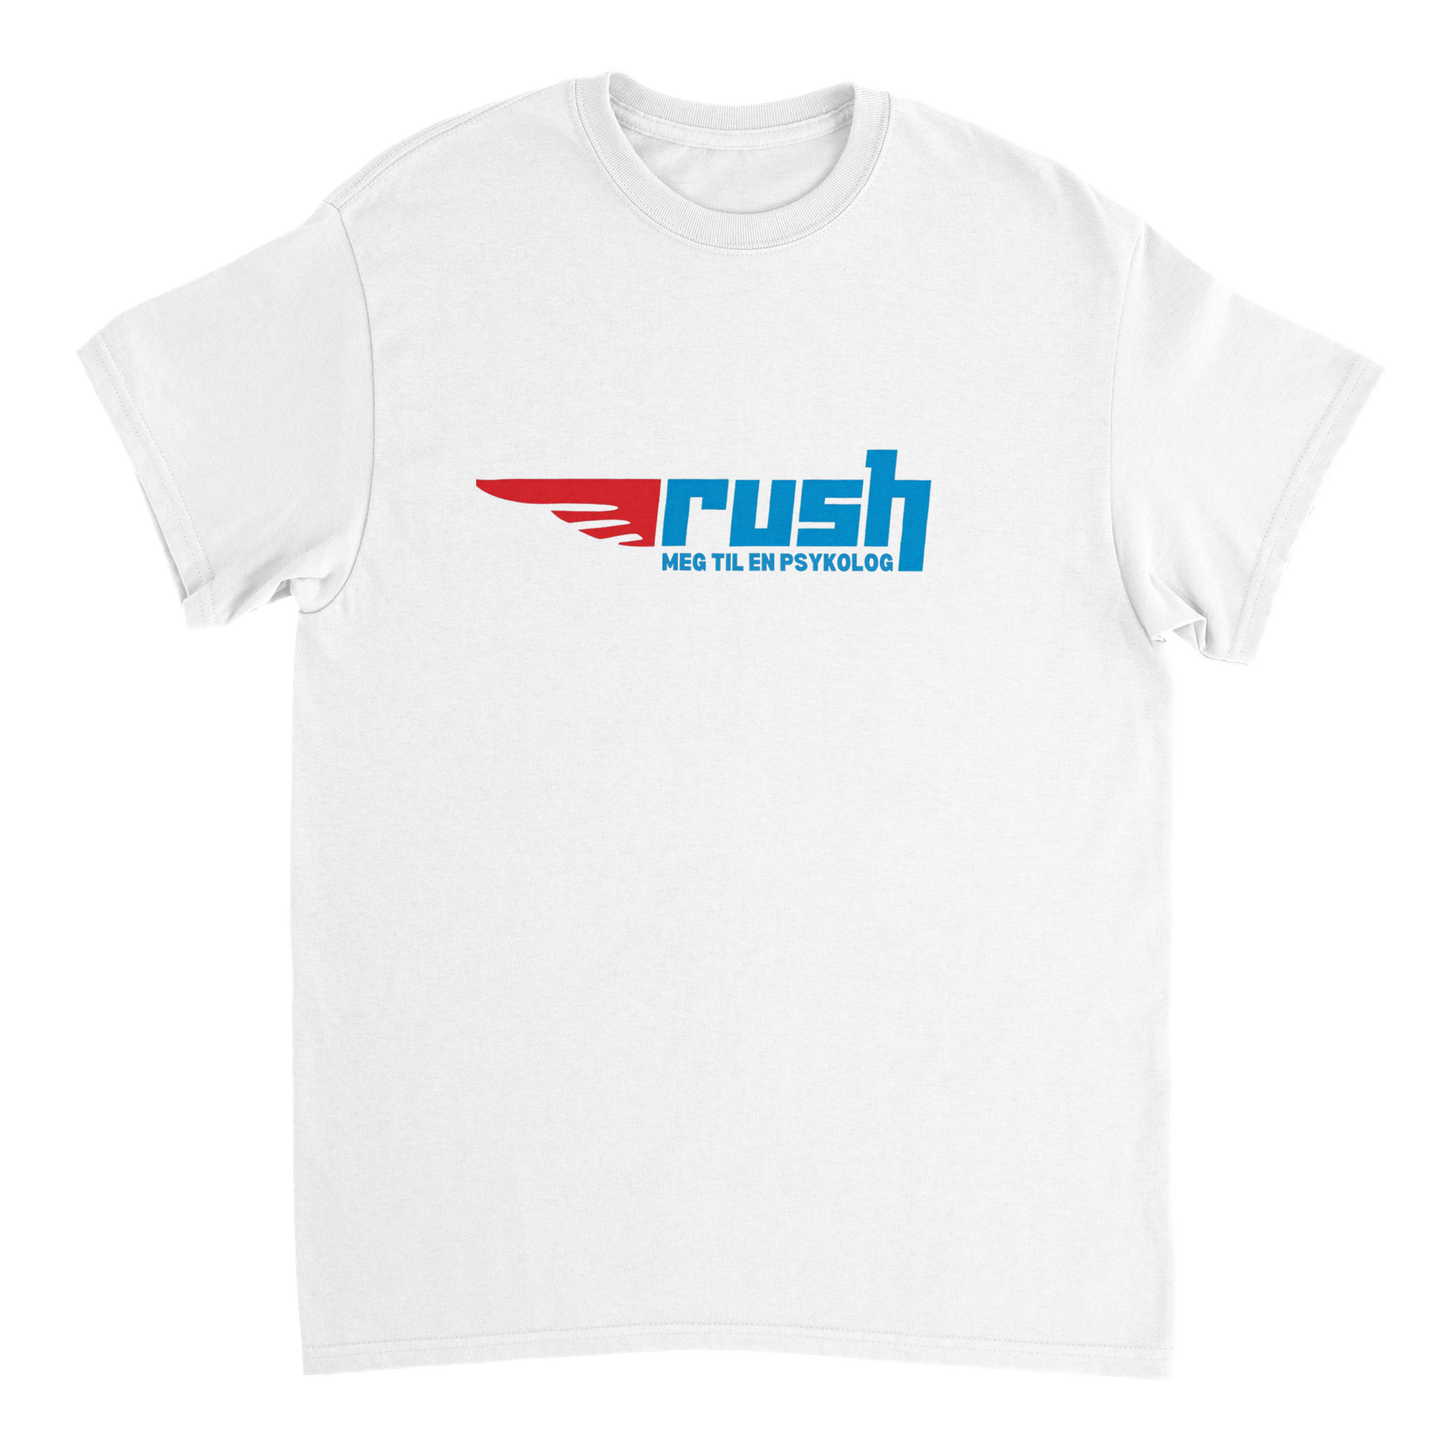 Rush Meg Til En Psykolog T-skjorte